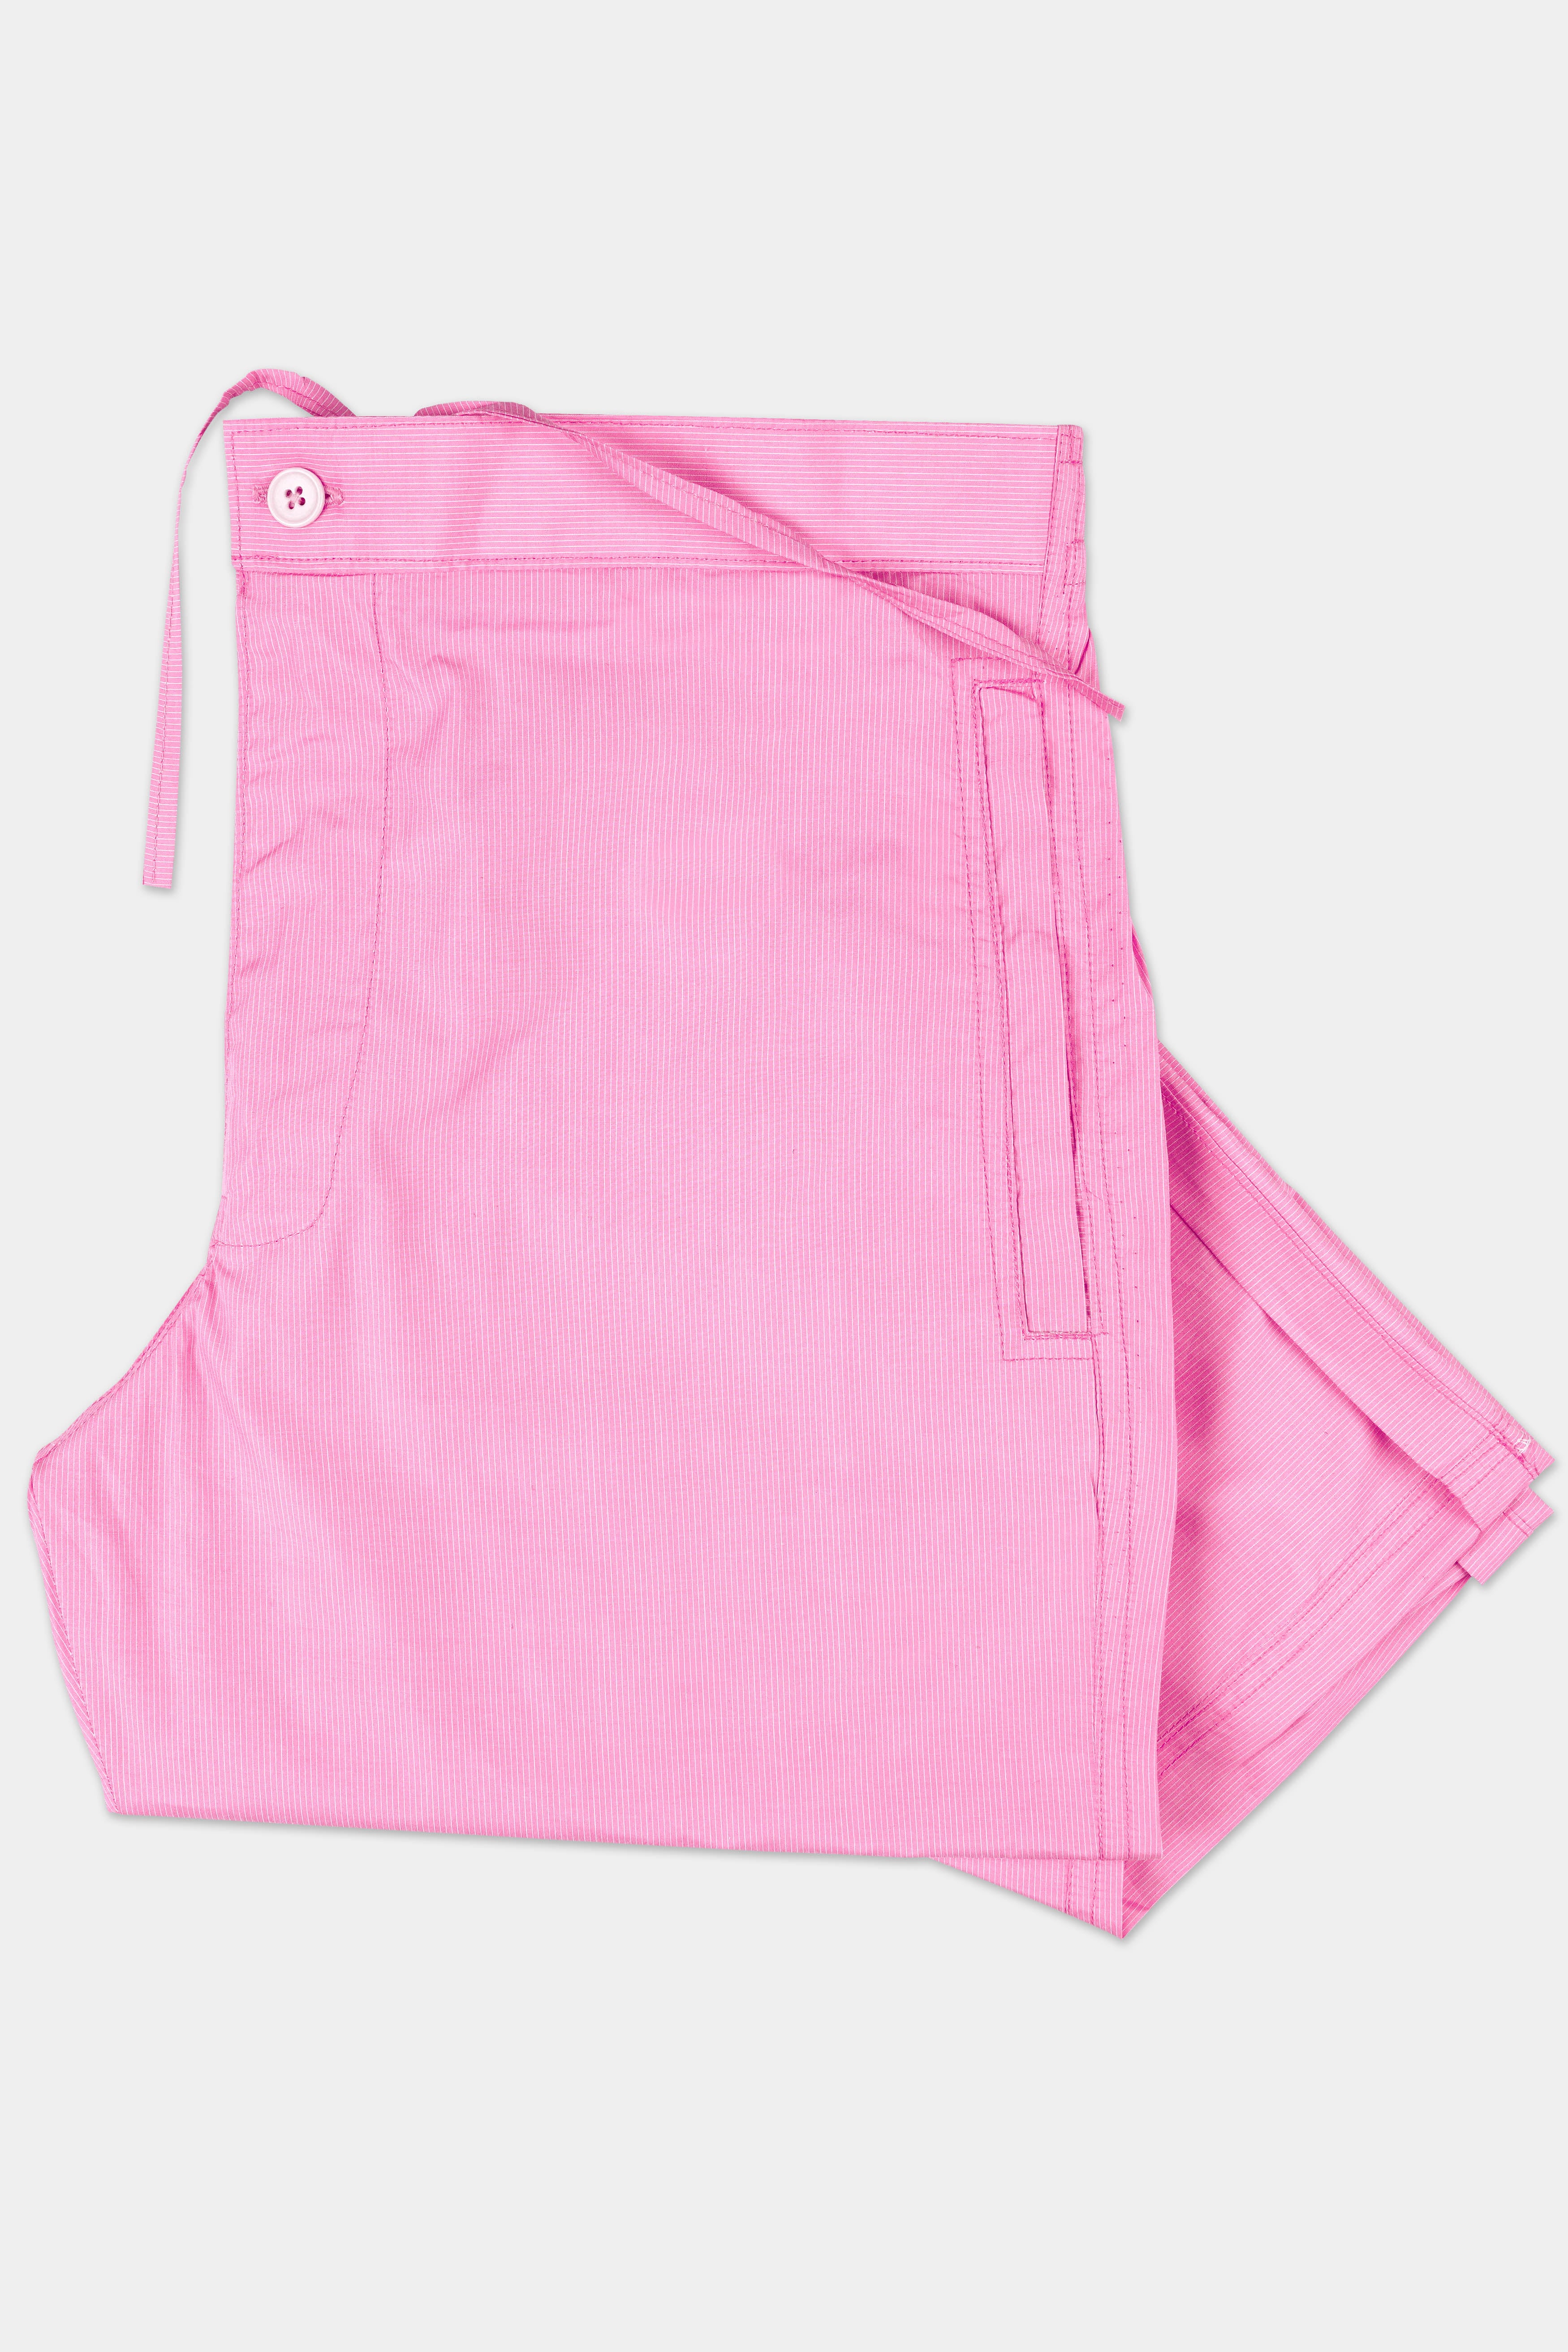 Bouquet Pink Pin Striped Poplin Giza Cotton Lounge Pant